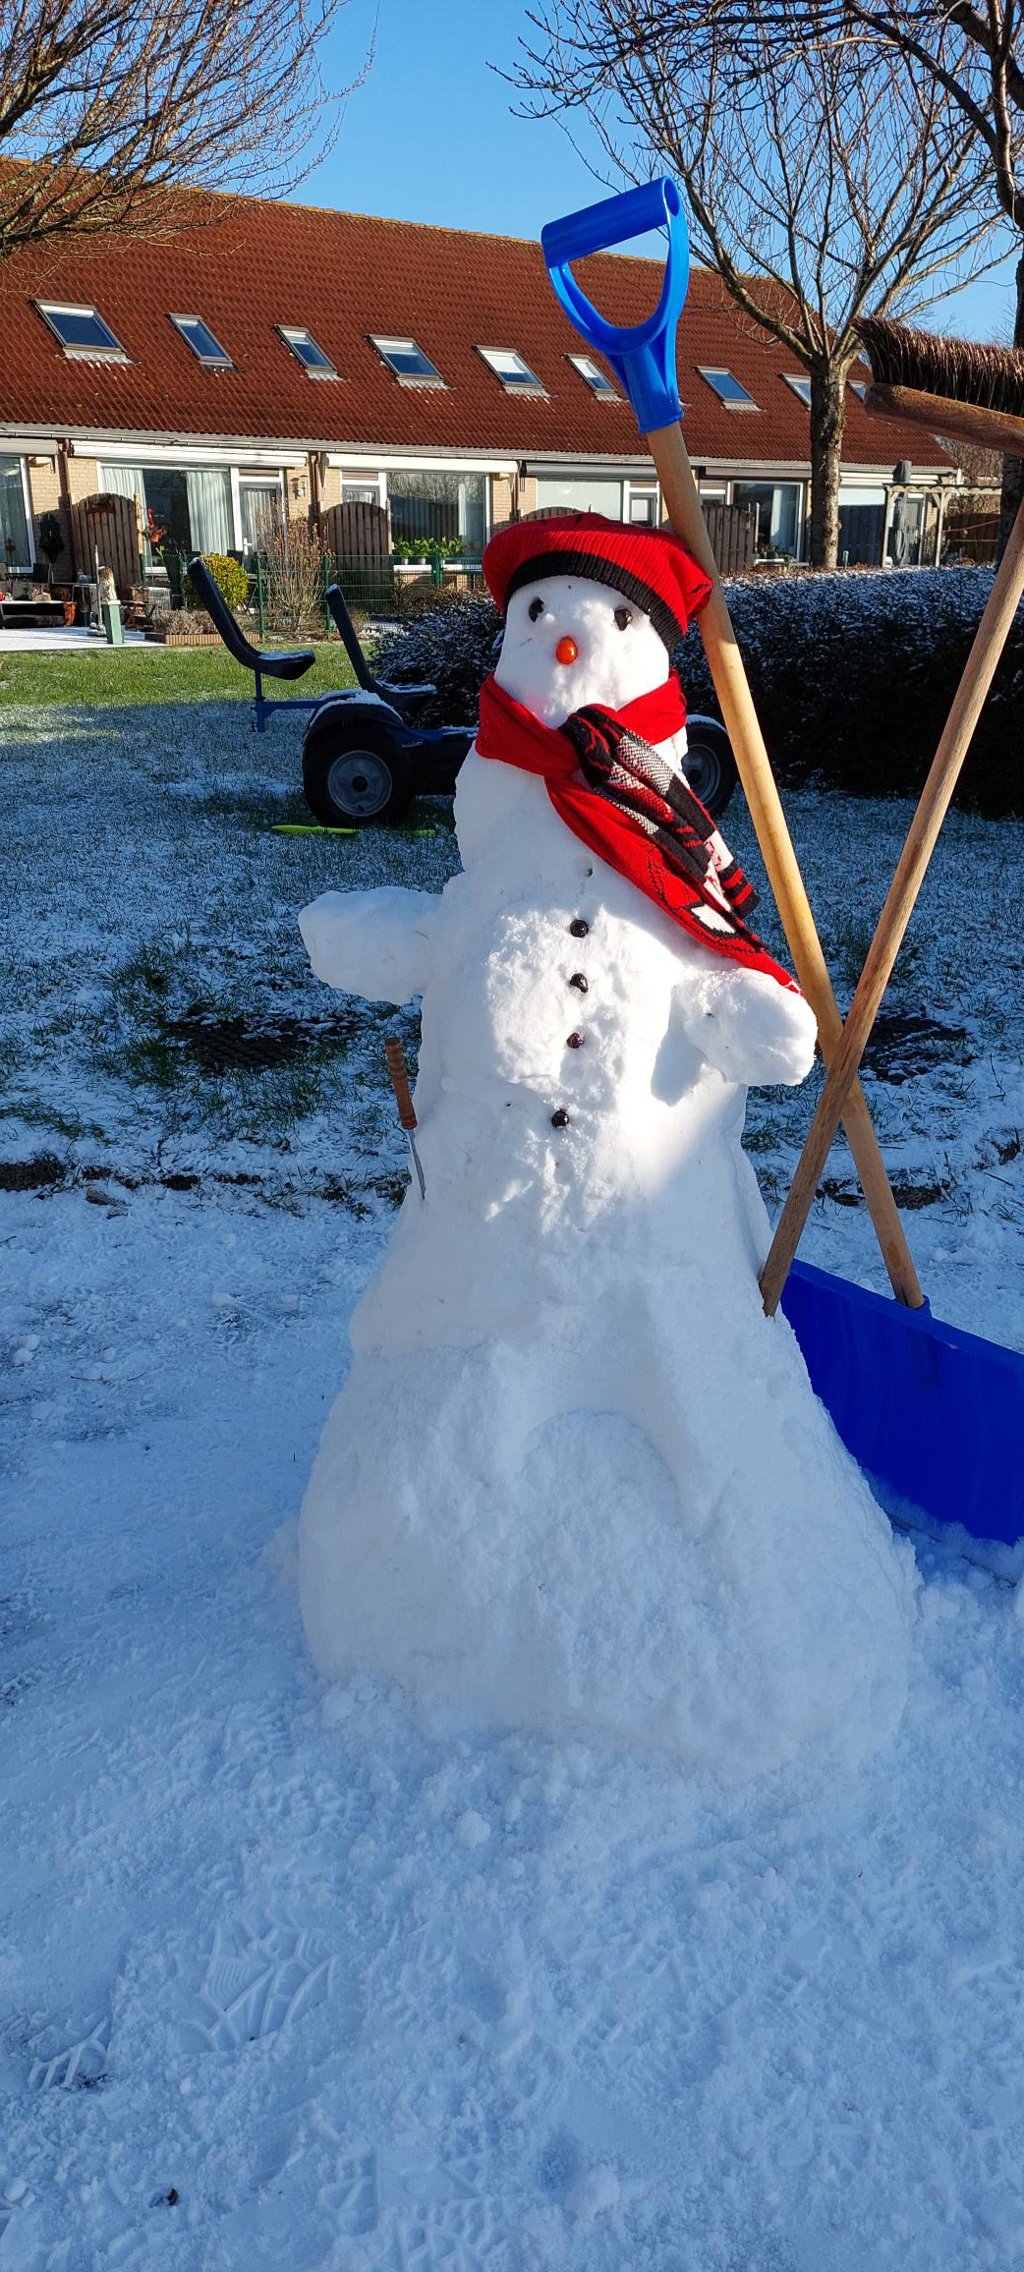 Lenie Waardenburg maakte een tijdje geleden deze foto. "Eindelijk weer eens genoeg sneeuw voor een mooie sneeuwpop."